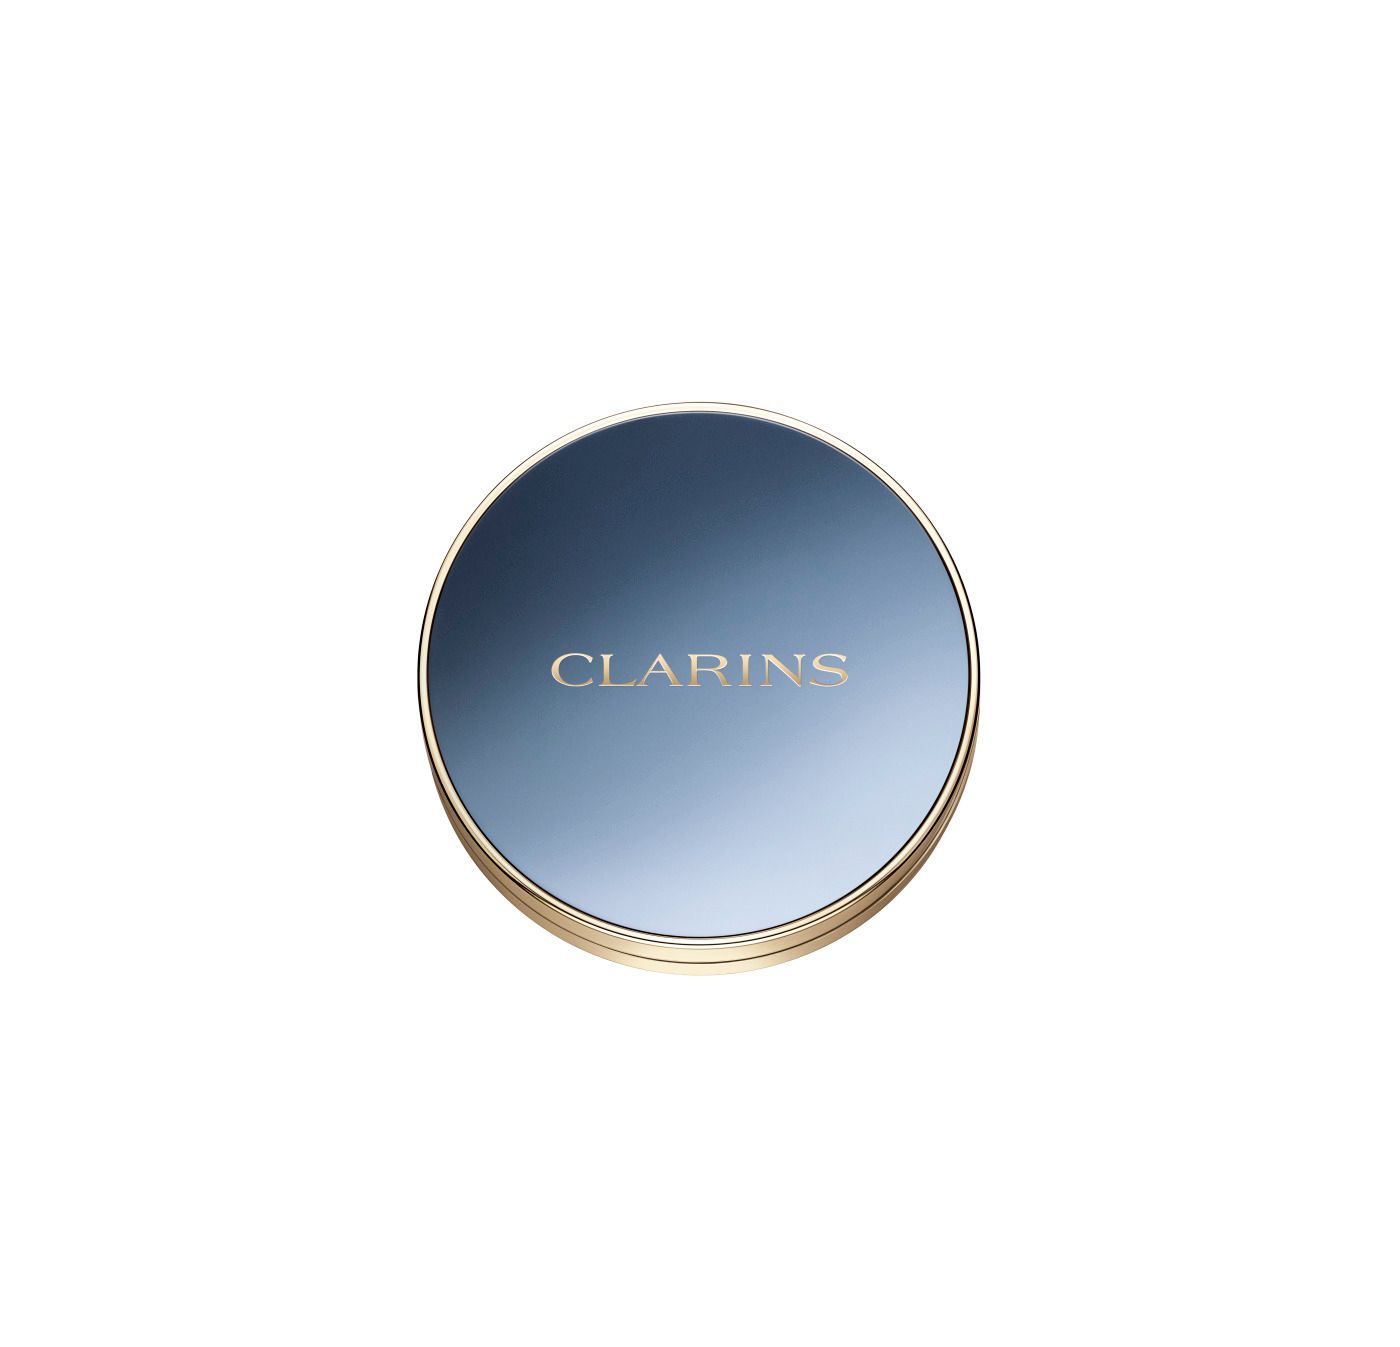 Clarins 4 palette eyeshadow 06 Midnight